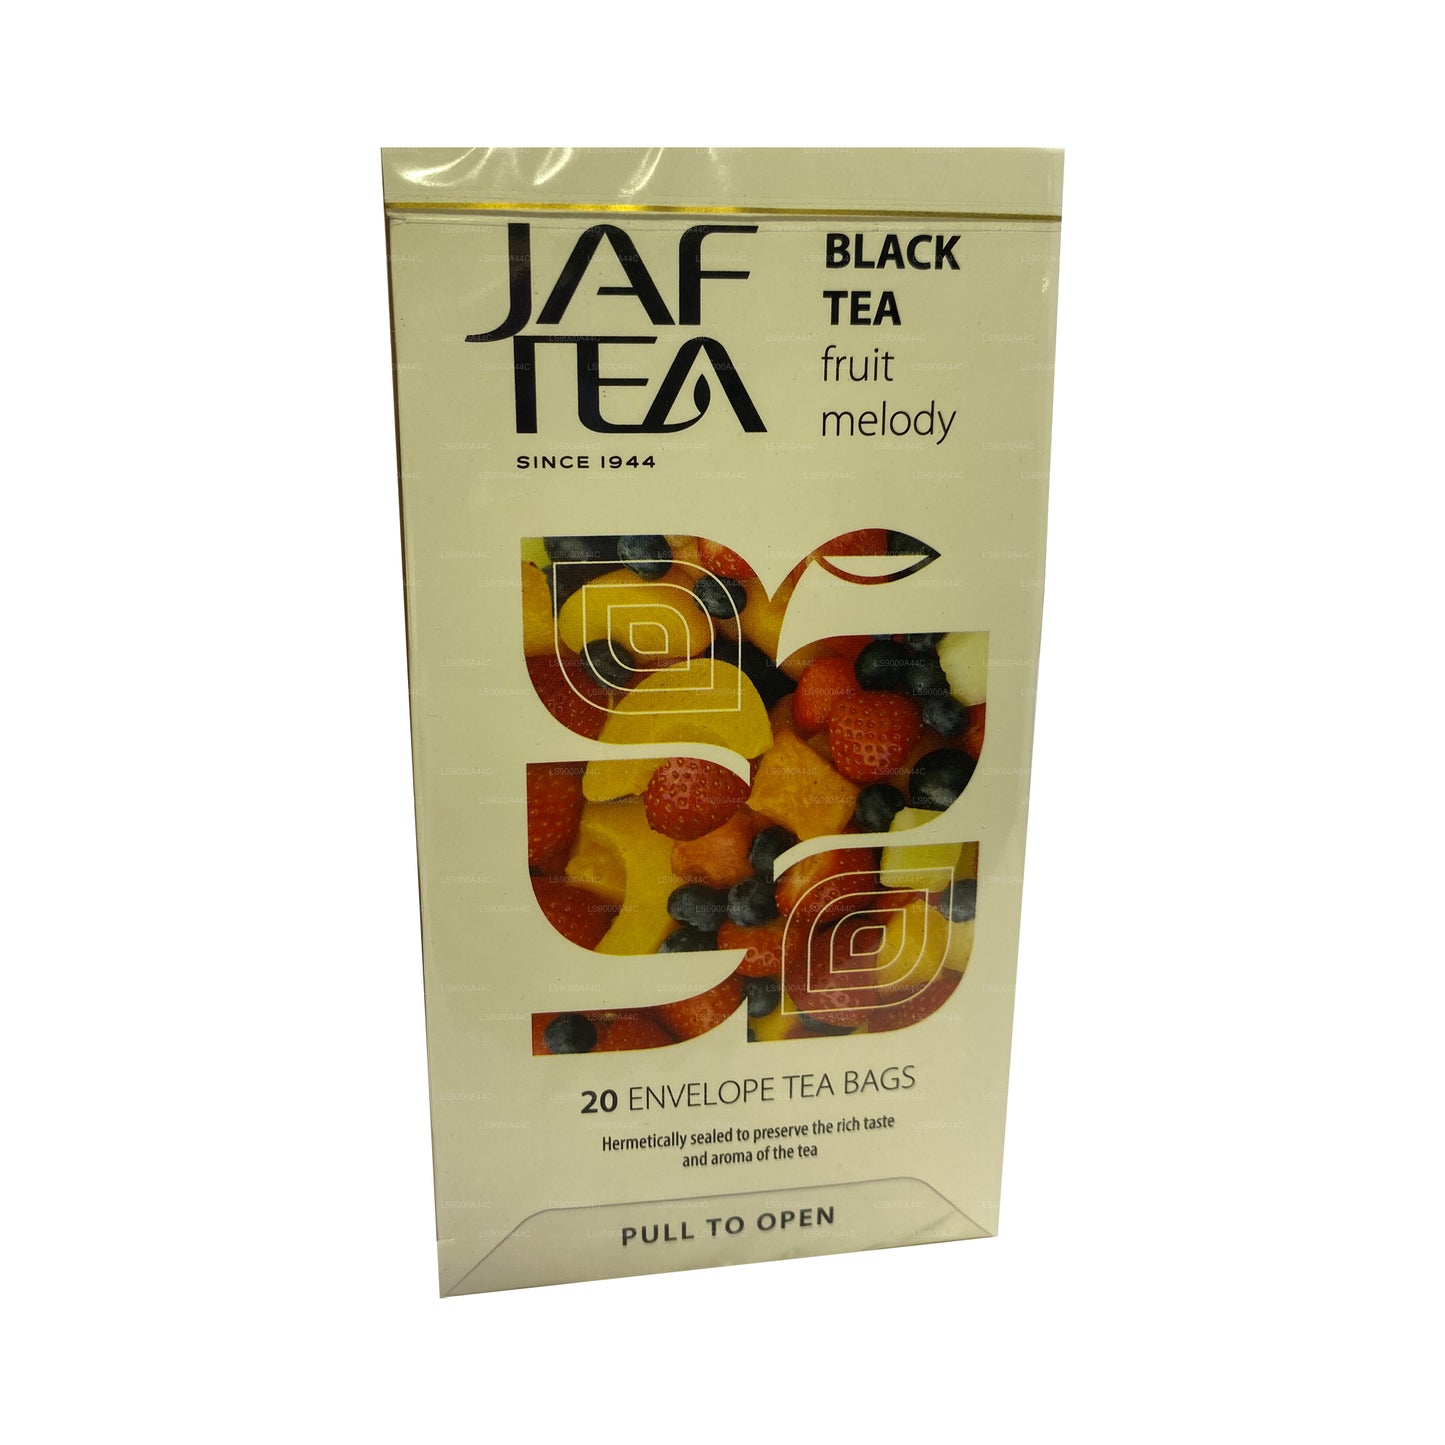 Jaf Çay Saf Meyveler Koleksiyonu Siyah Çay Meyve Melodisi (30g) 20 Çay Poşeti